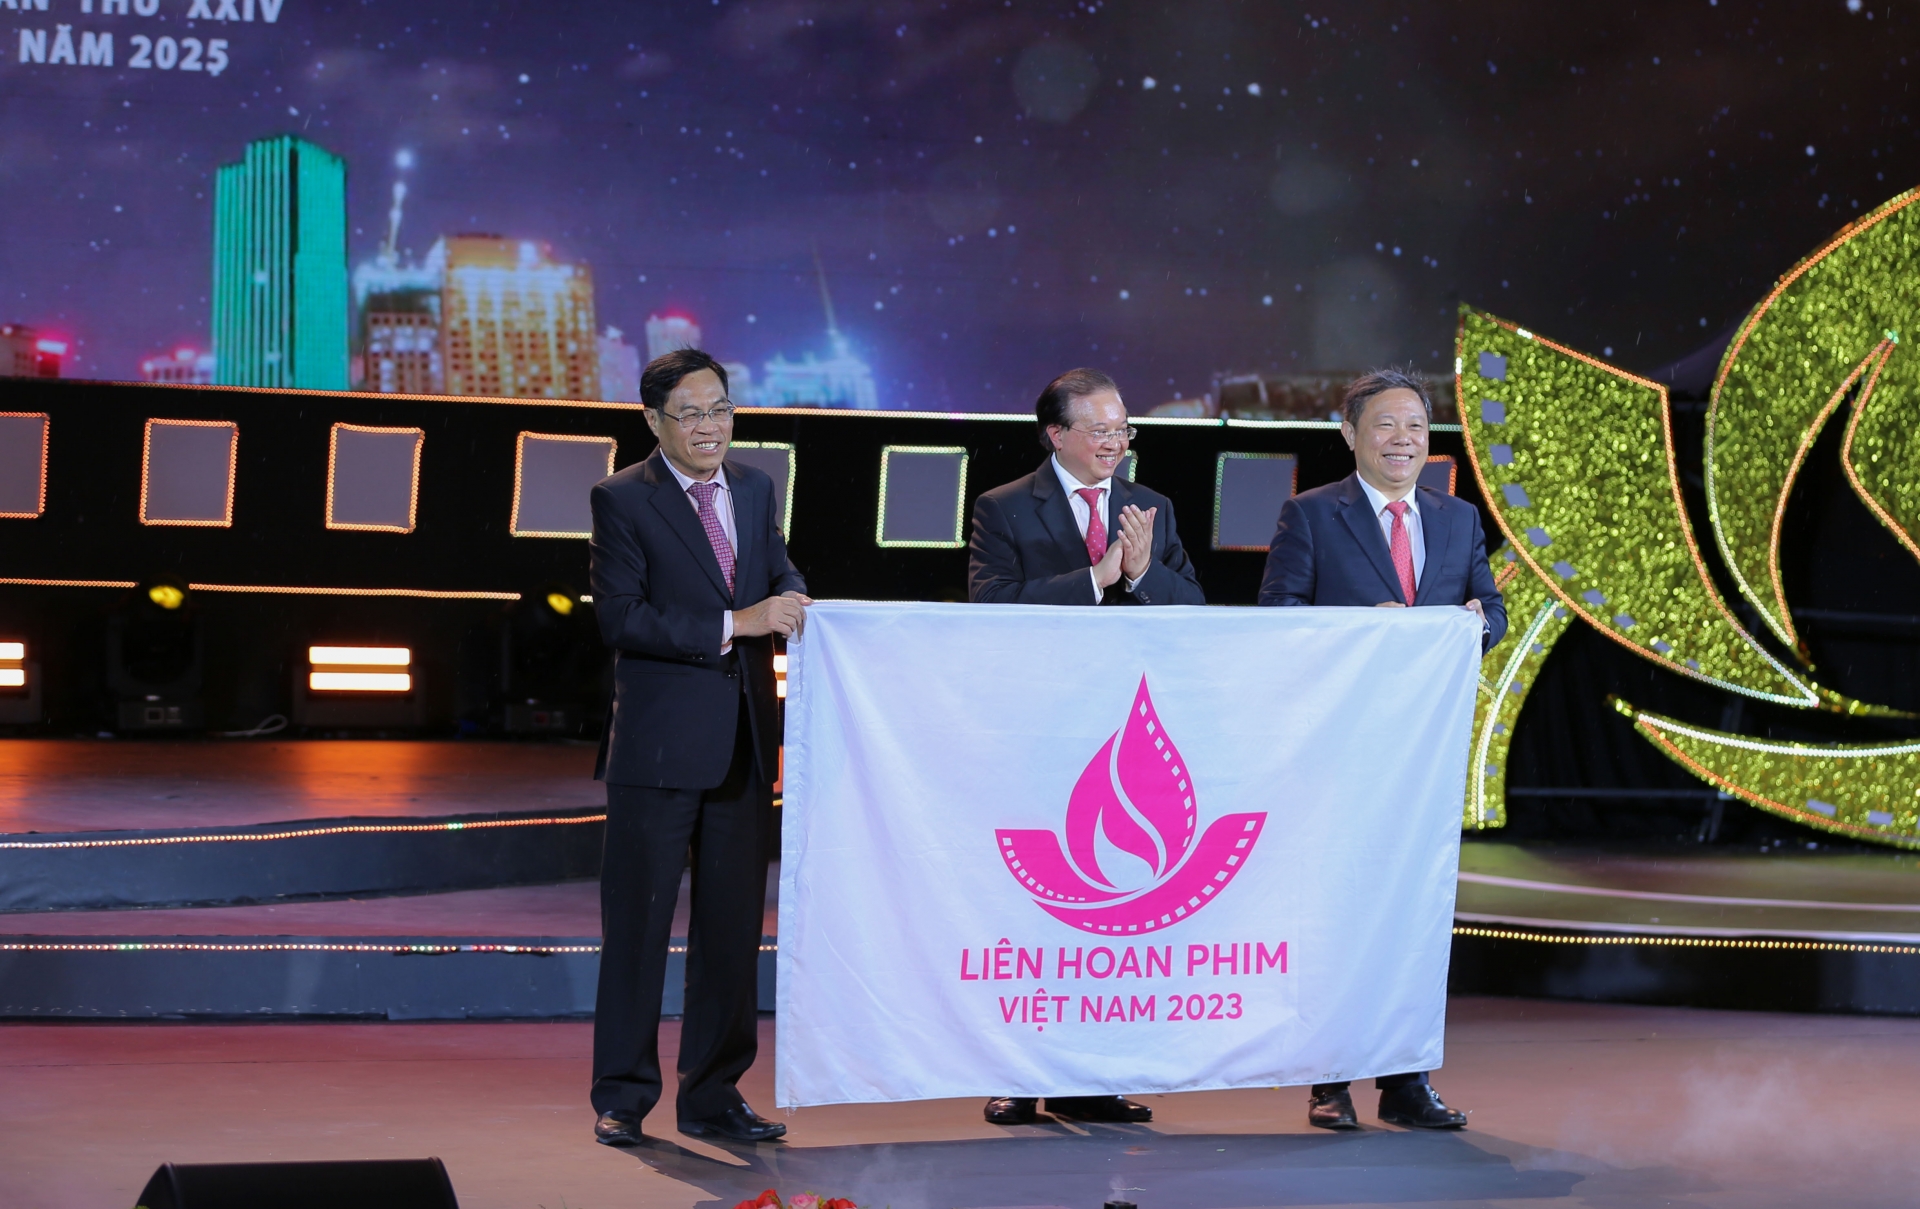 Phó Chủ tịch UBND tỉnh Lâm Đồng Võ Ngọc Hiệp trao cờ đăng cai Liên hoan Phim lần thứ XXIV cho đại diện lãnh đạo TP Hồ Chí Minh